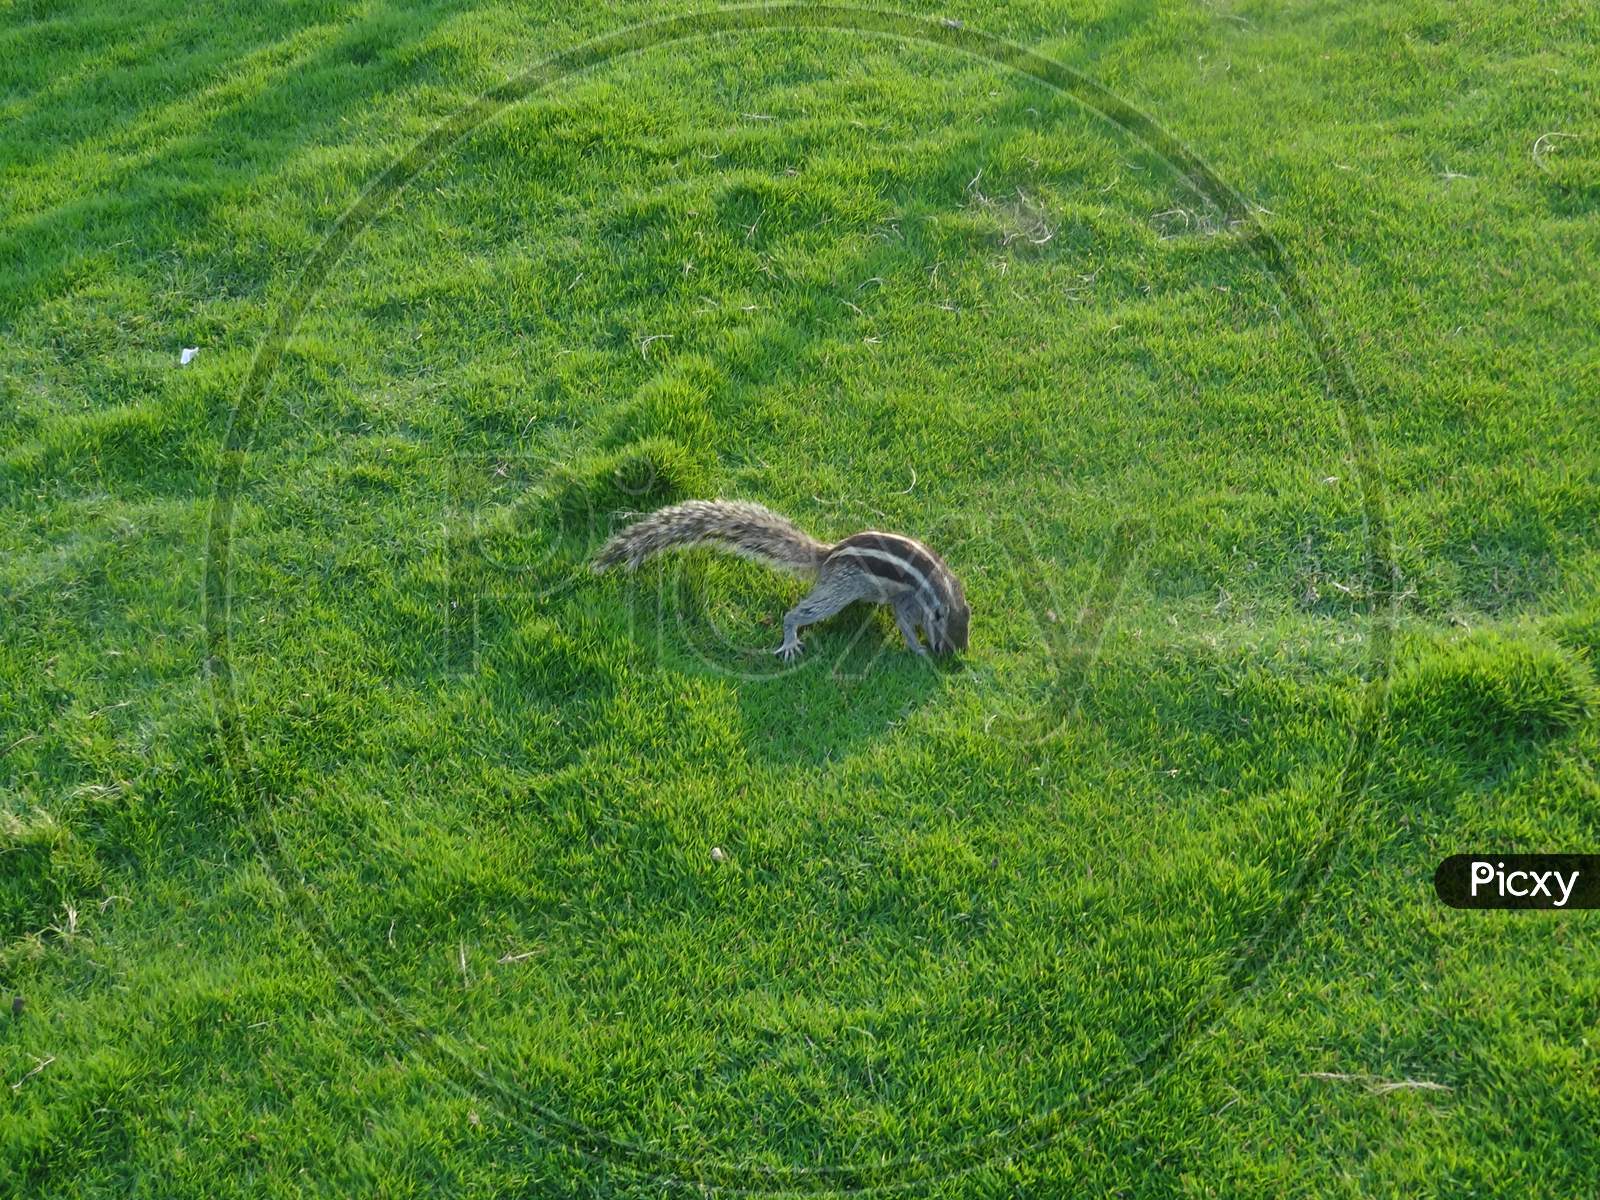 Squirrel in a grassland